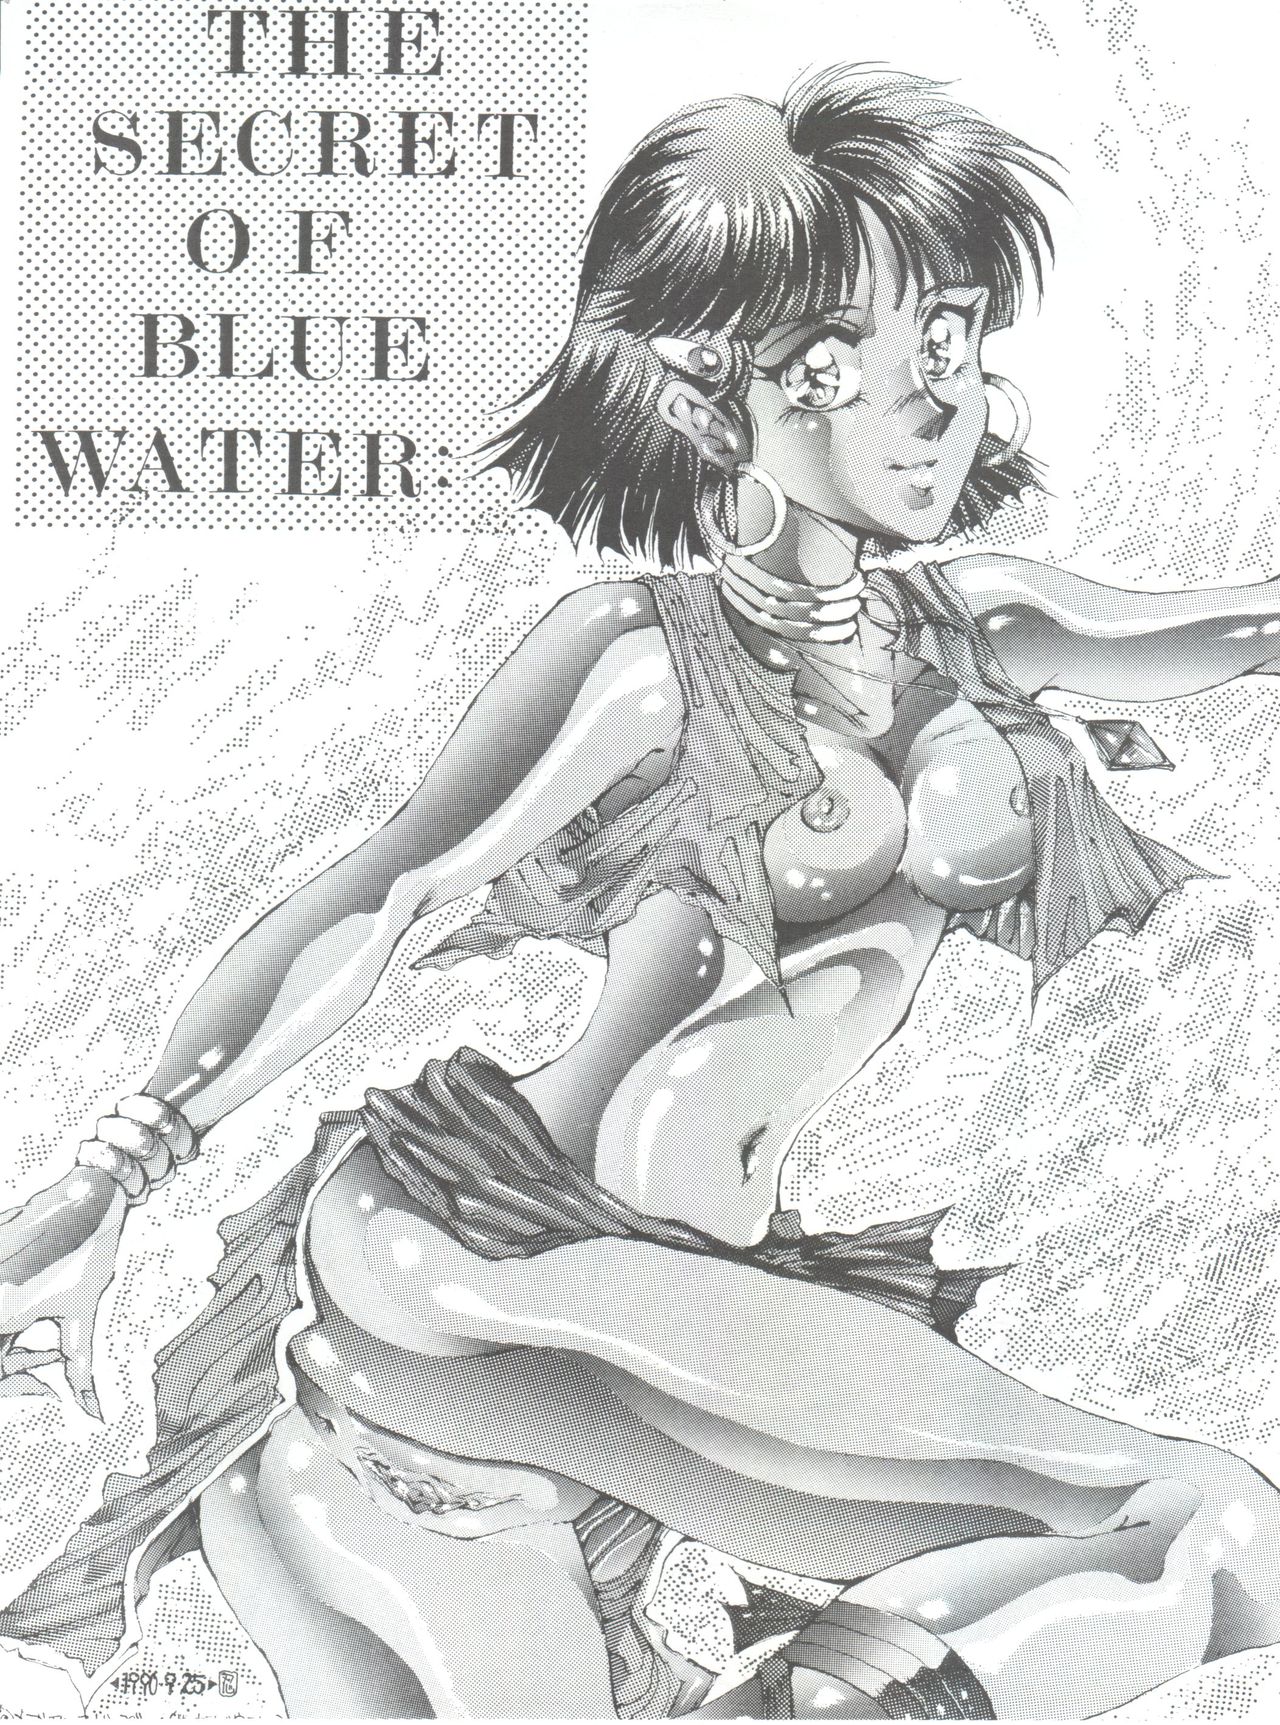 [Minies Club (Various)] Nadia Girls in Emerald Sea vol. 2 - Minies Club 23 (Nadia, the Secret of Blue Water) [MINIES CLUB (こうたろう)] Nadia girls in Emerald sea vol. 2 - Minies club 23 (ふしぎの海のナディア)